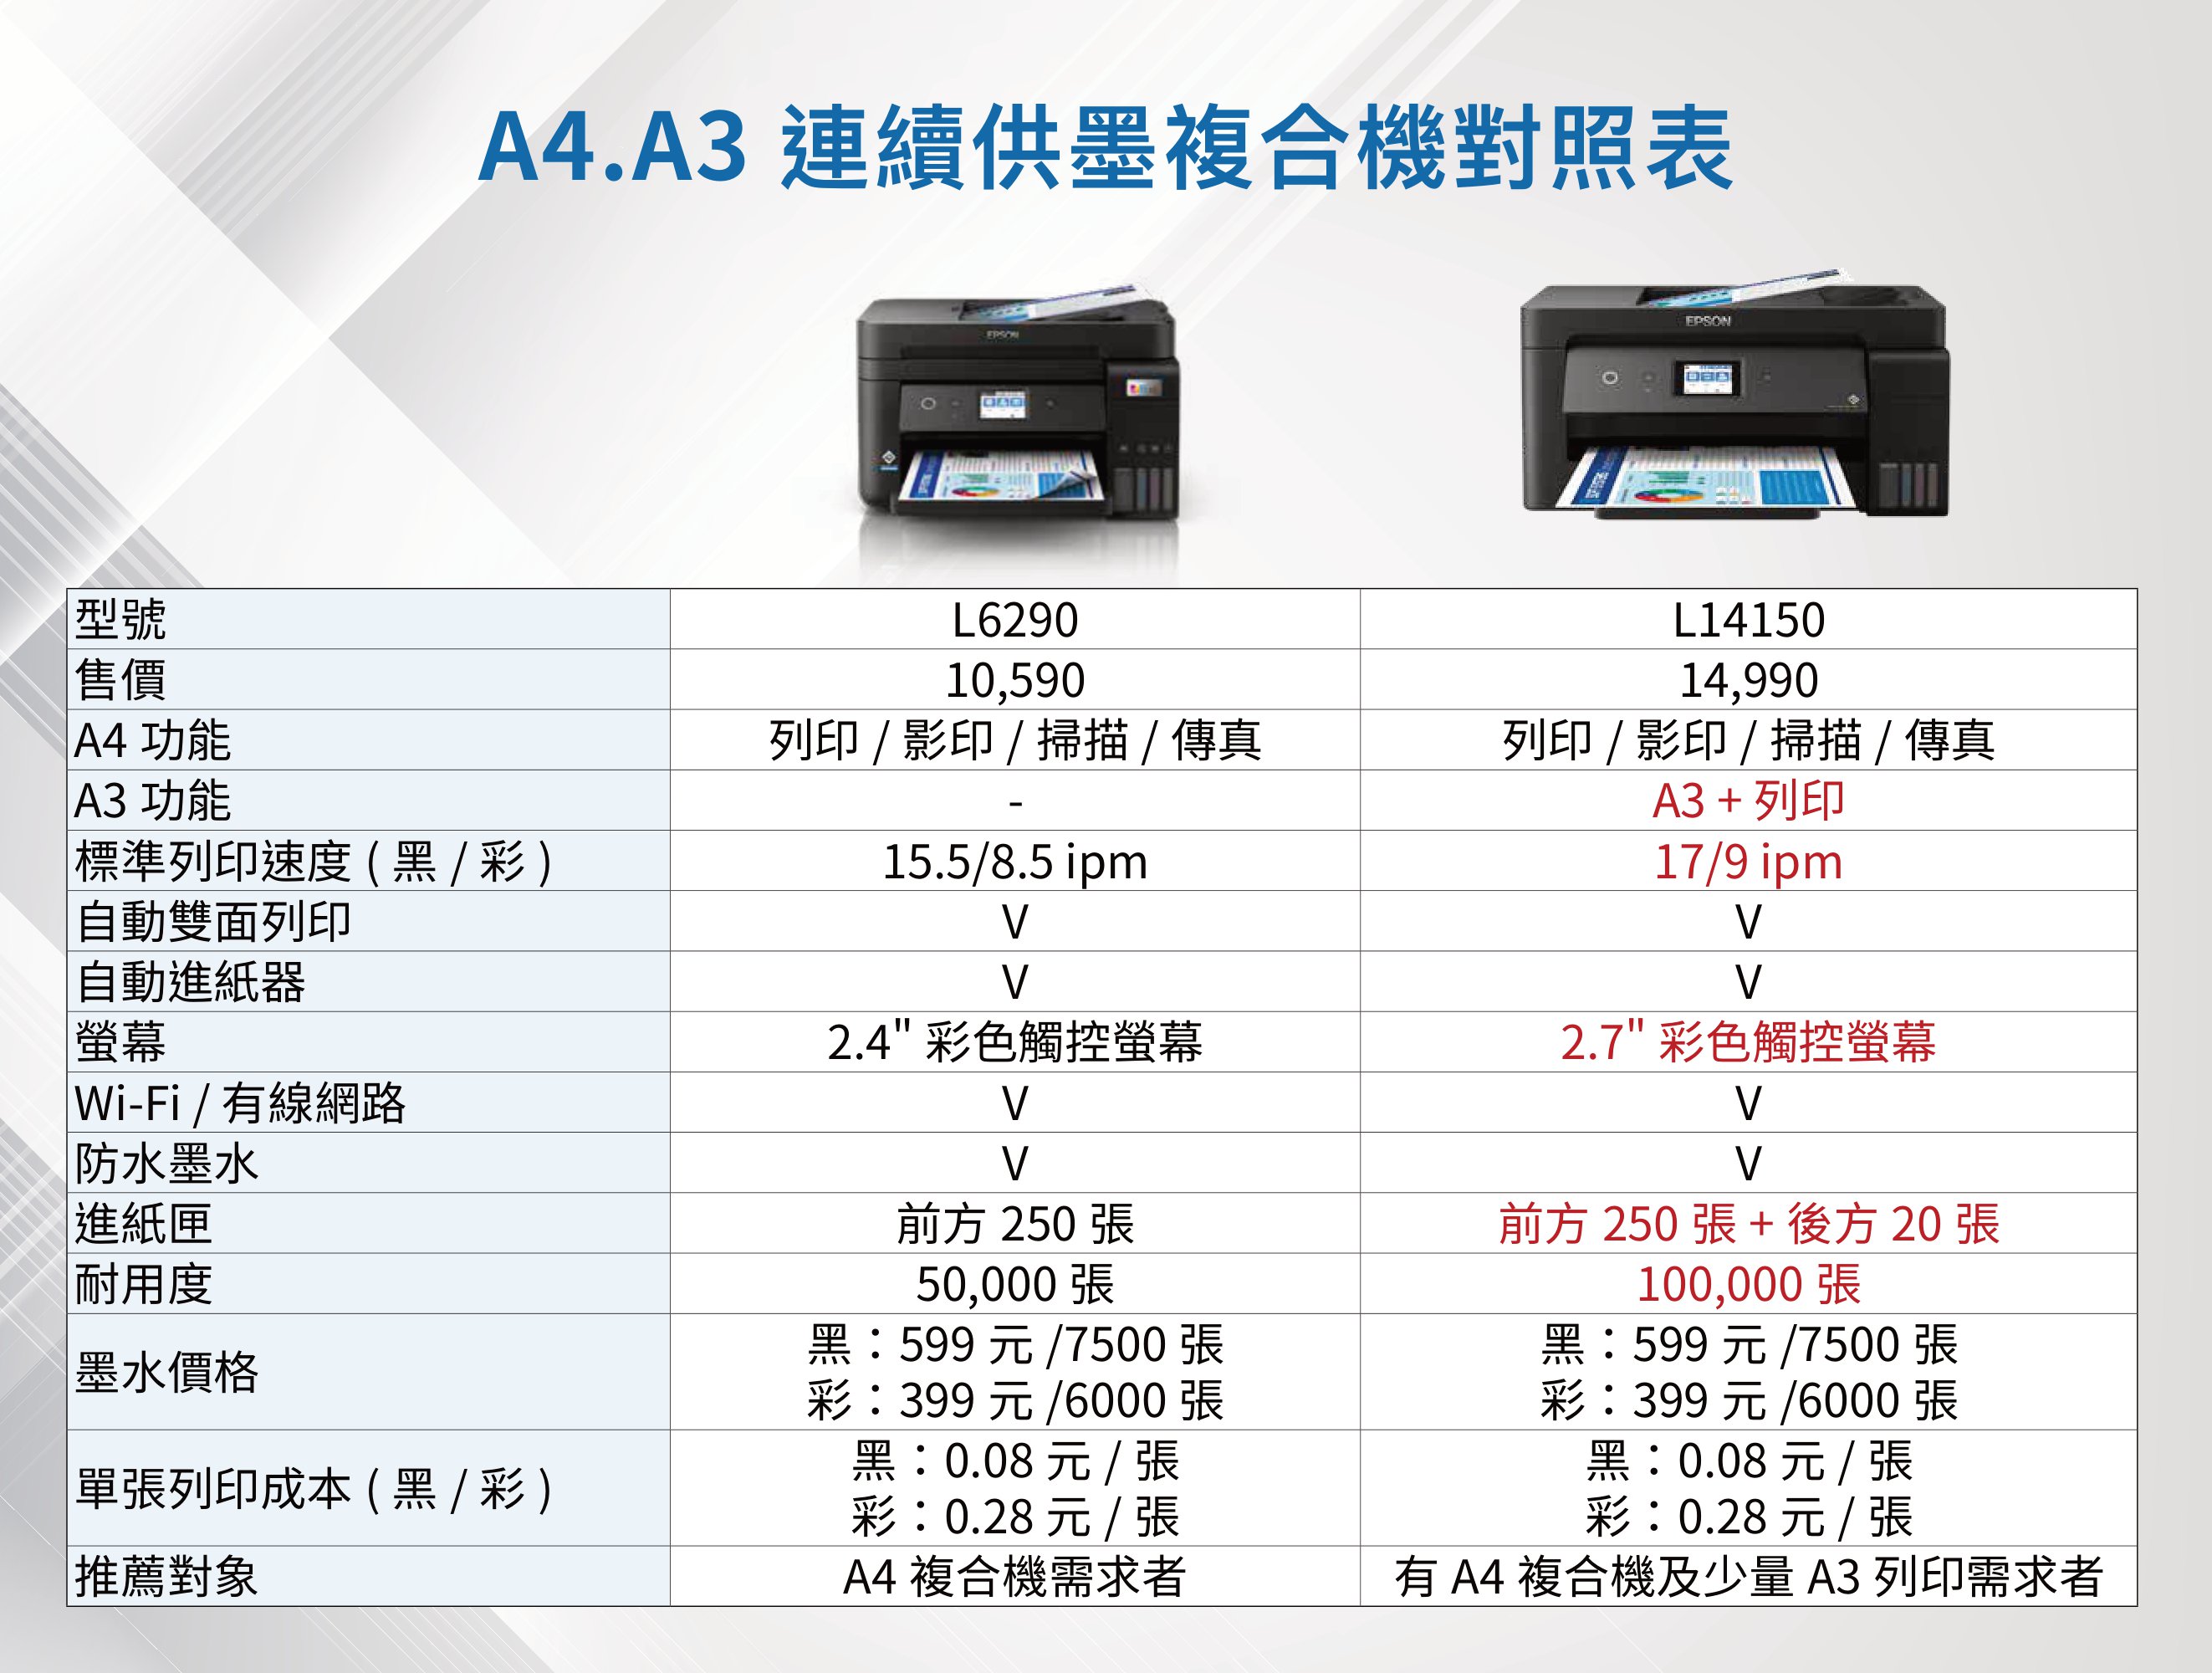 A4.A3 連續供墨複合機對照表型號售價A4 功能A3 功能標準列印速度(黑/彩)自動雙面列印自動進紙器螢幕Wi-Fi/有線網路|防水墨水EPSONL629010,590L1415014,990列印 / 影印 / 掃描/傳真列印 / 影印 / 掃描/傳真A3 + 列印15.5/8.5 ipm17/9 ipm2.4 彩色觸控螢幕2.7 彩色觸控螢幕進紙匣耐用度墨水價格單張列印成本(黑/彩)推薦對象前方 250 張50,000張黑:599元/7500張彩:399元/6000 張黑:0.08元 / 張彩:0.28元/張A4 複合機需求者前方 250張+後方20 張100,000 張黑:599元/7500 張彩:399元/6000 張黑:0.08元 / 張彩:0.28 元 / 張有 A4 複合機及少量 A3 列印需求者